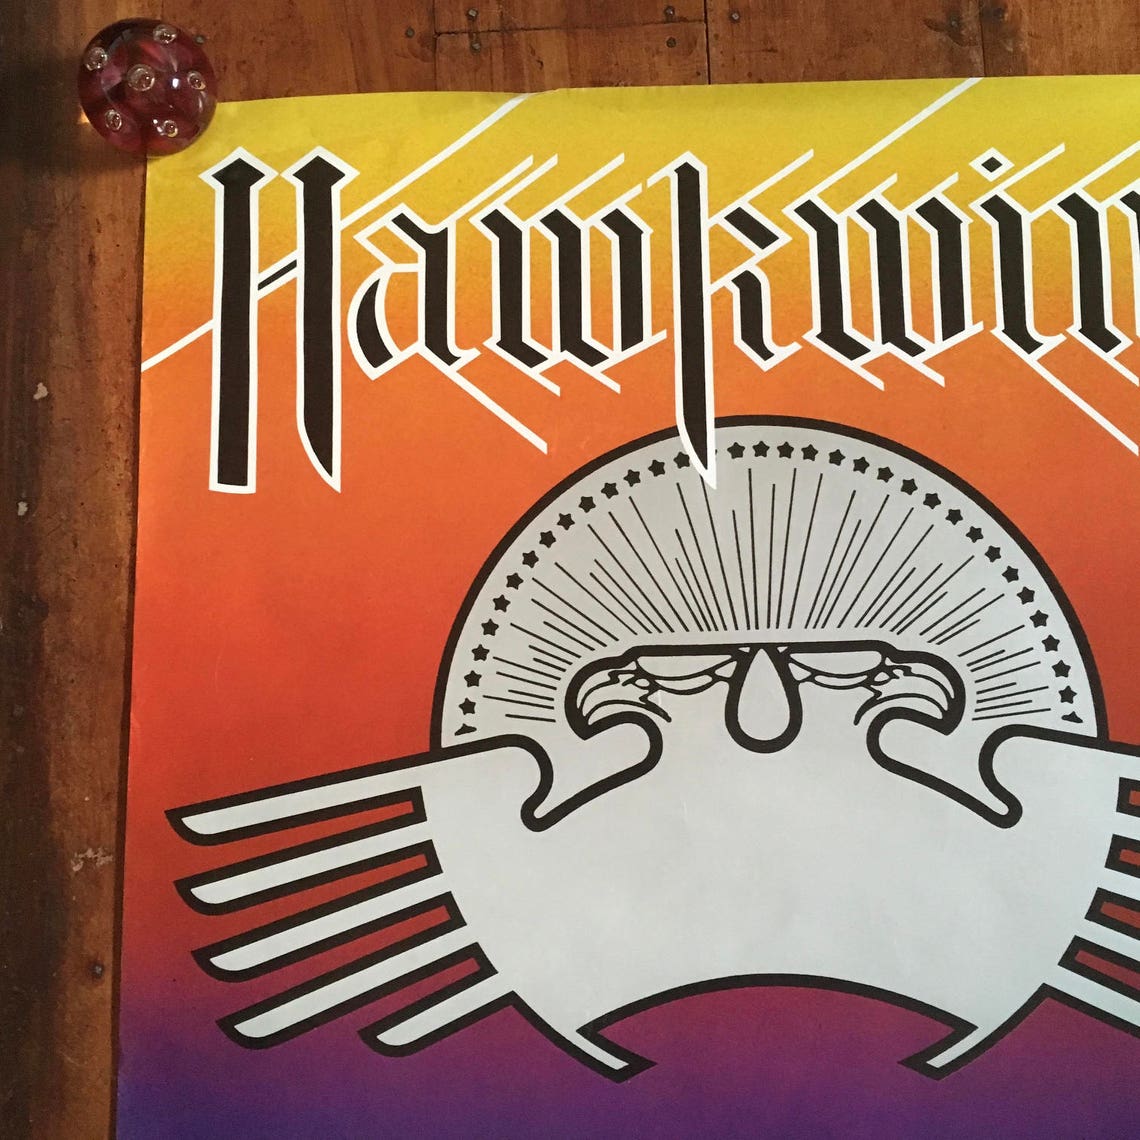 hawkwind tour dates 1974